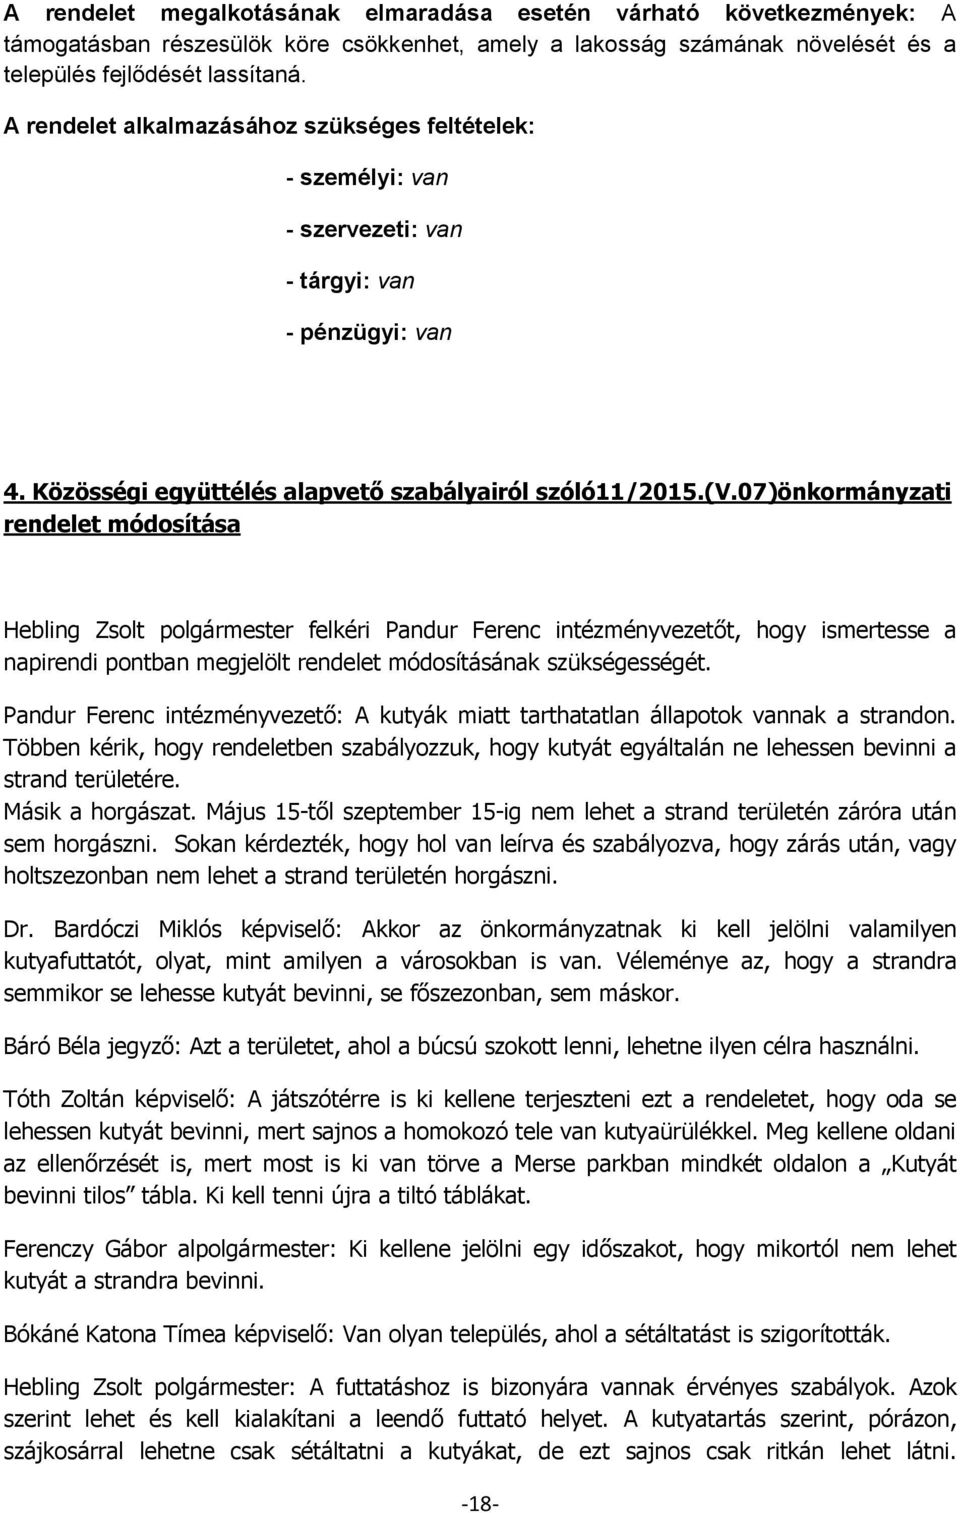 07)önkormányzati rendelet módosítása Hebling Zsolt polgármester felkéri Pandur Ferenc intézményvezetőt, hogy ismertesse a napirendi pontban megjelölt rendelet módosításának szükségességét.